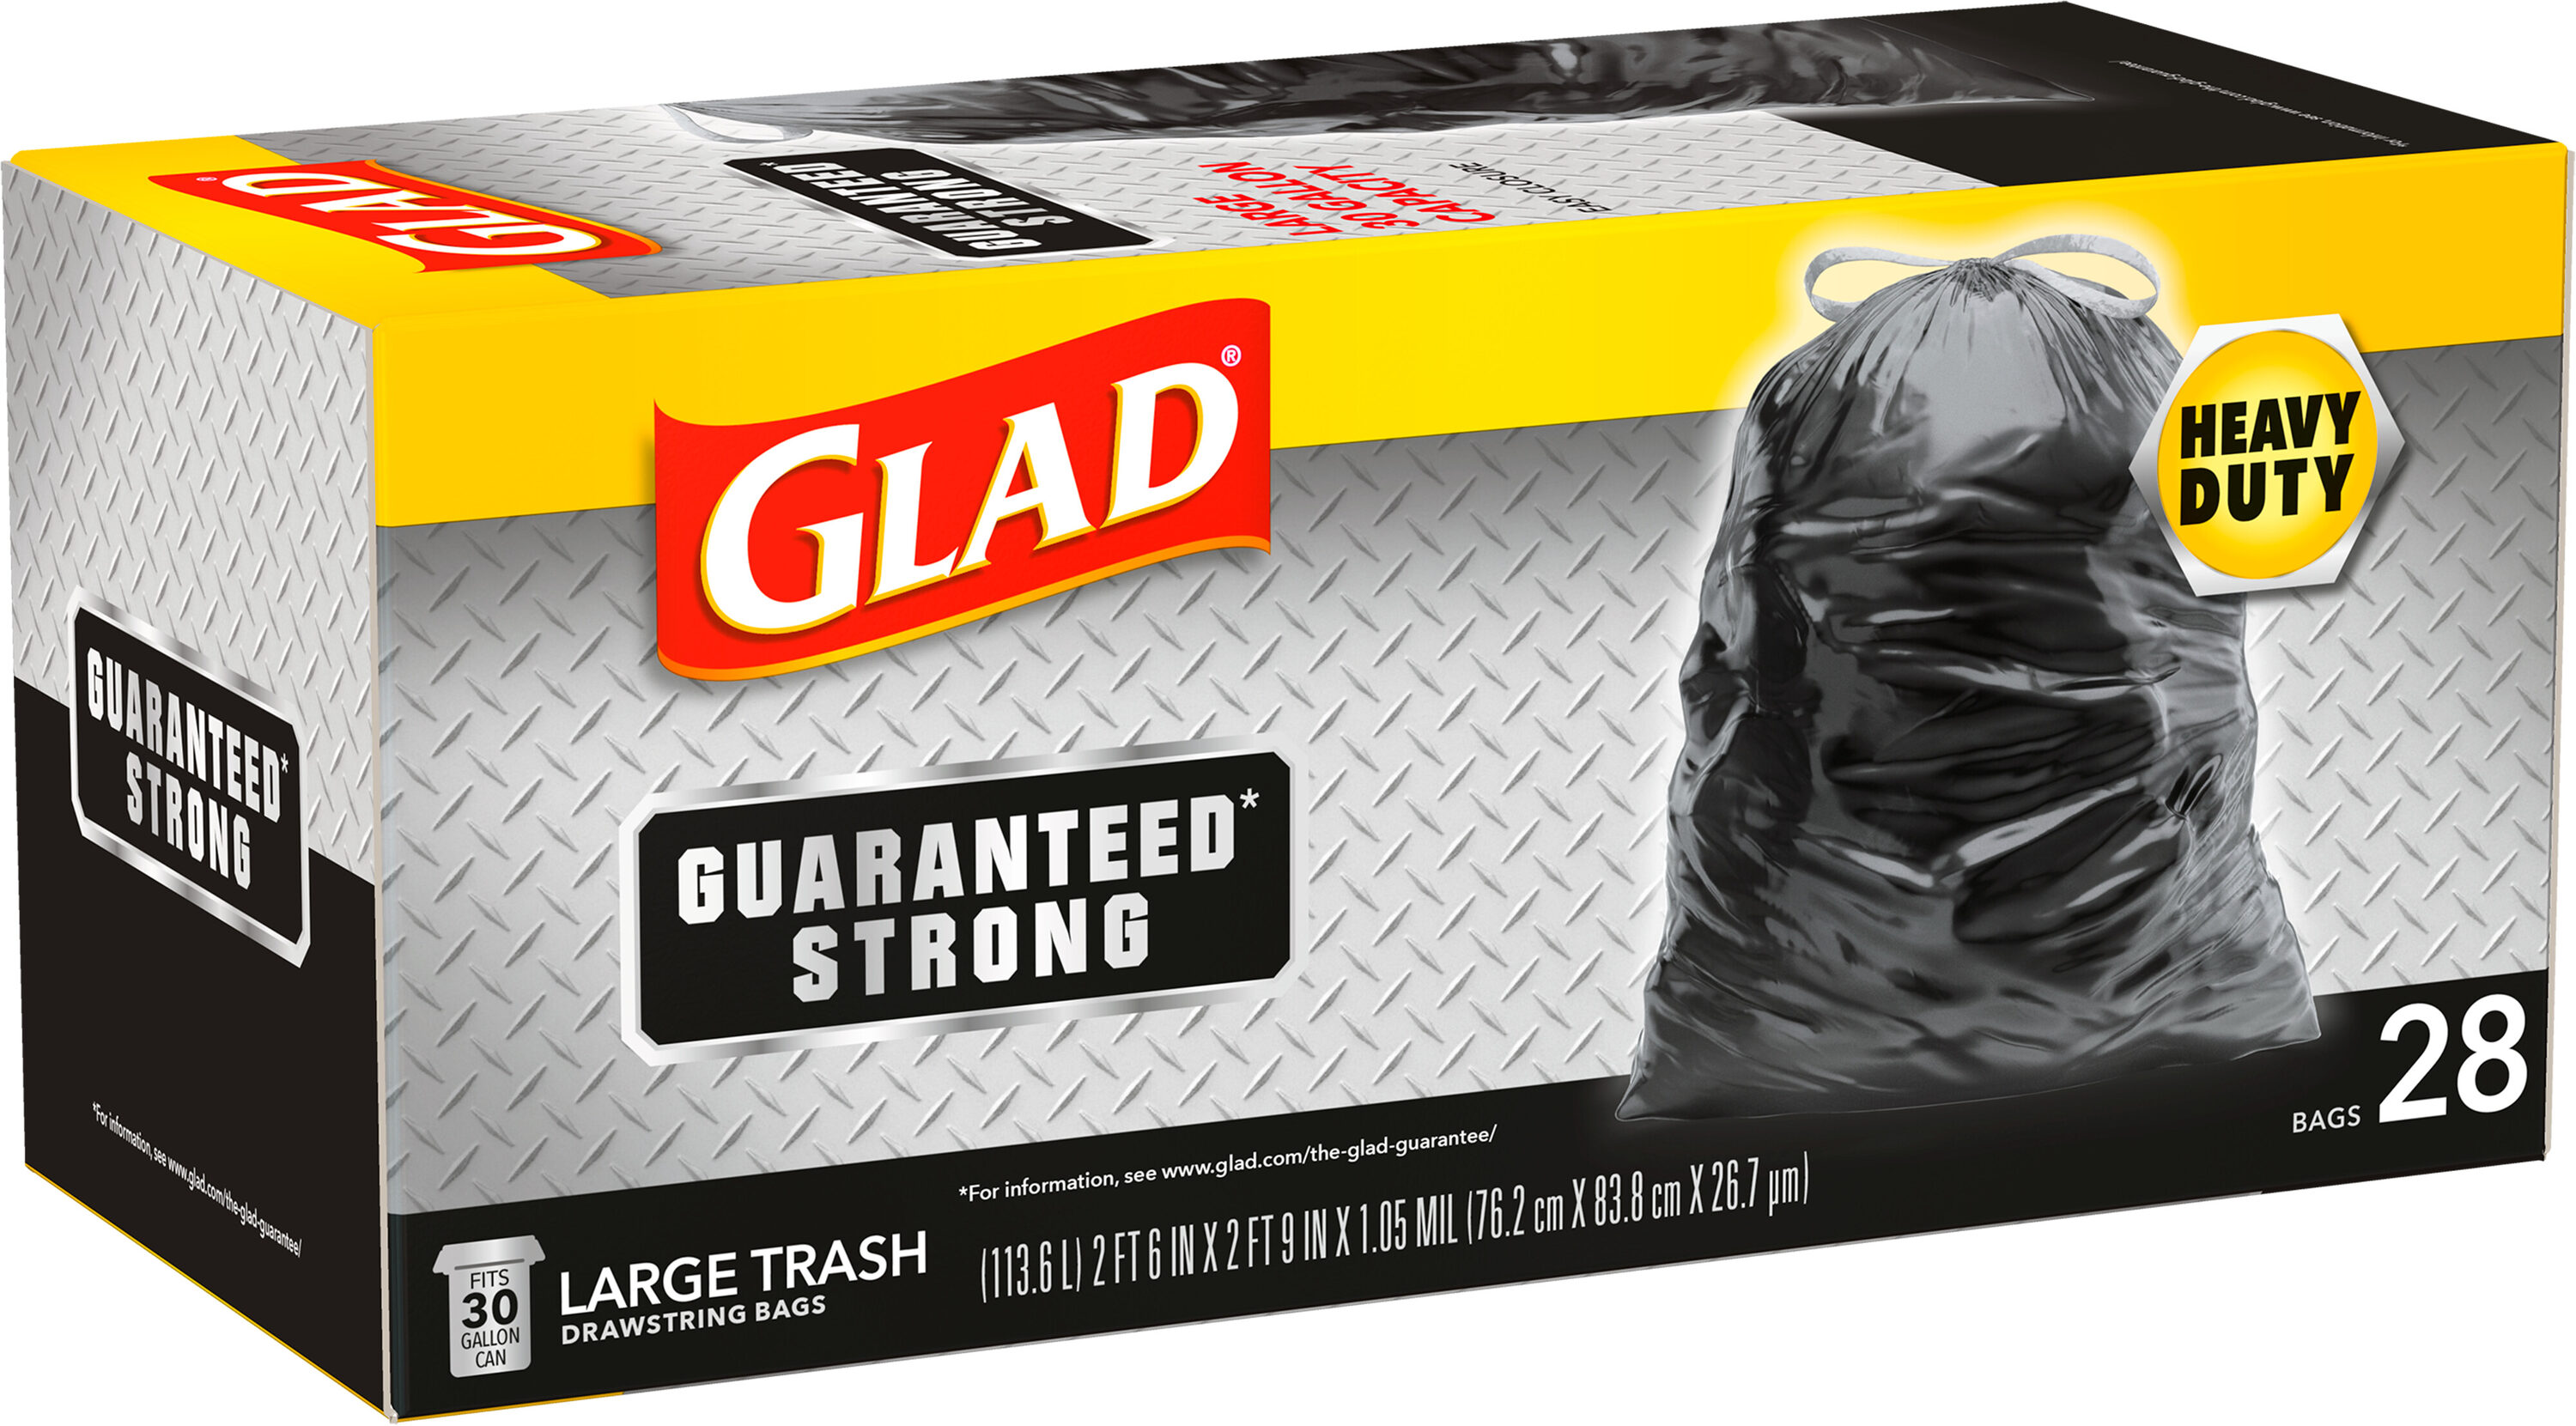 Glad Large Drawstring Trash Bags, 80 ct./30 gal.